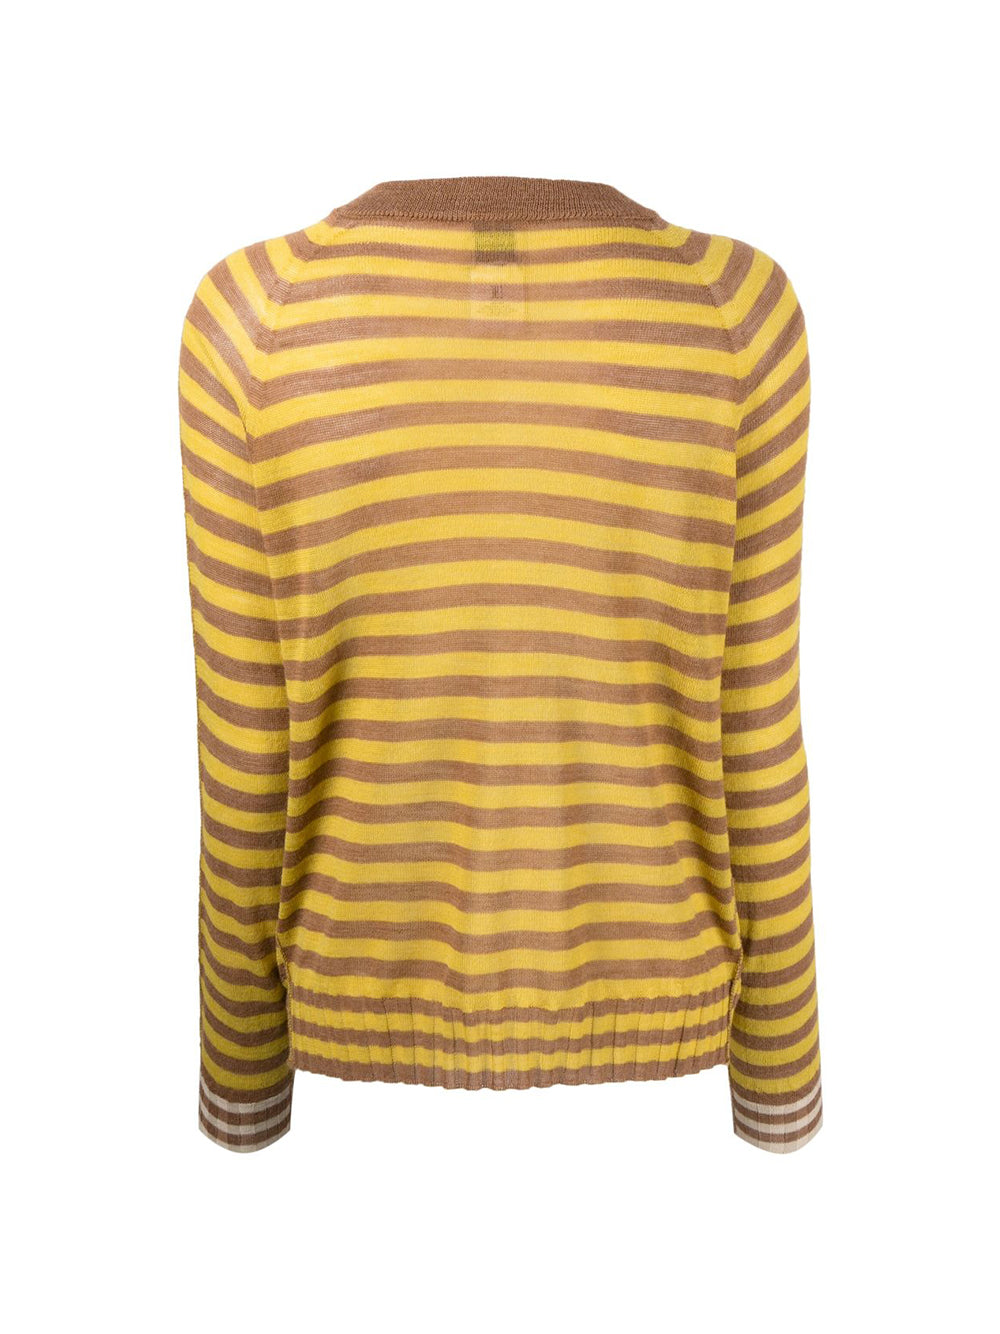 Stripes Boxy Yellow Sweater